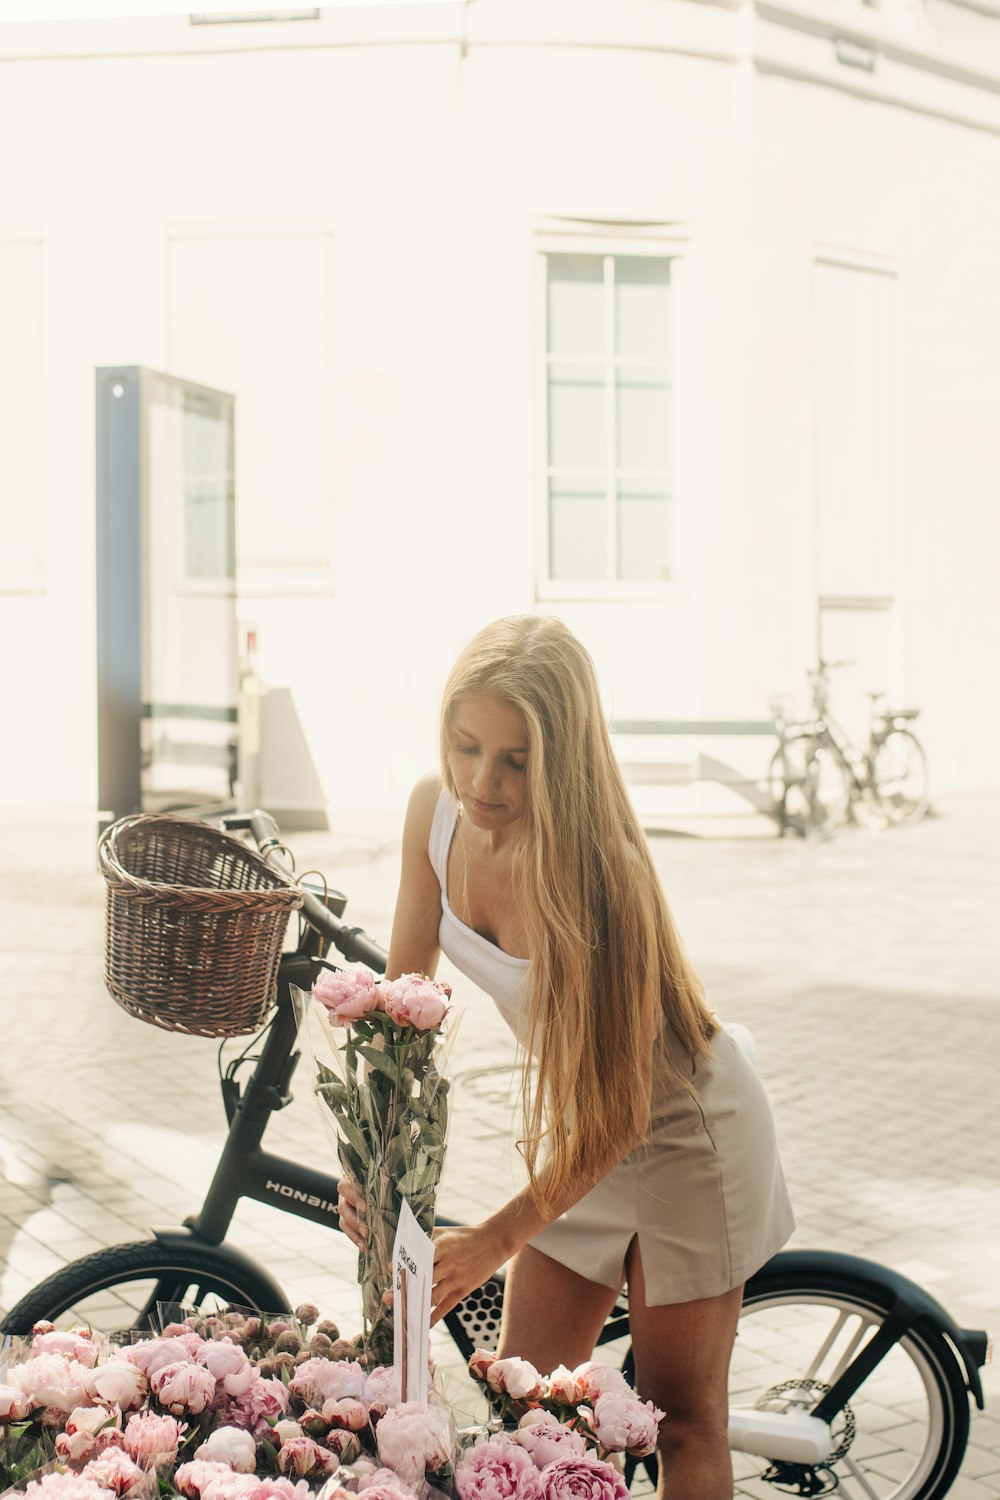 Eine Frau sitzt auf einem Fahrrad